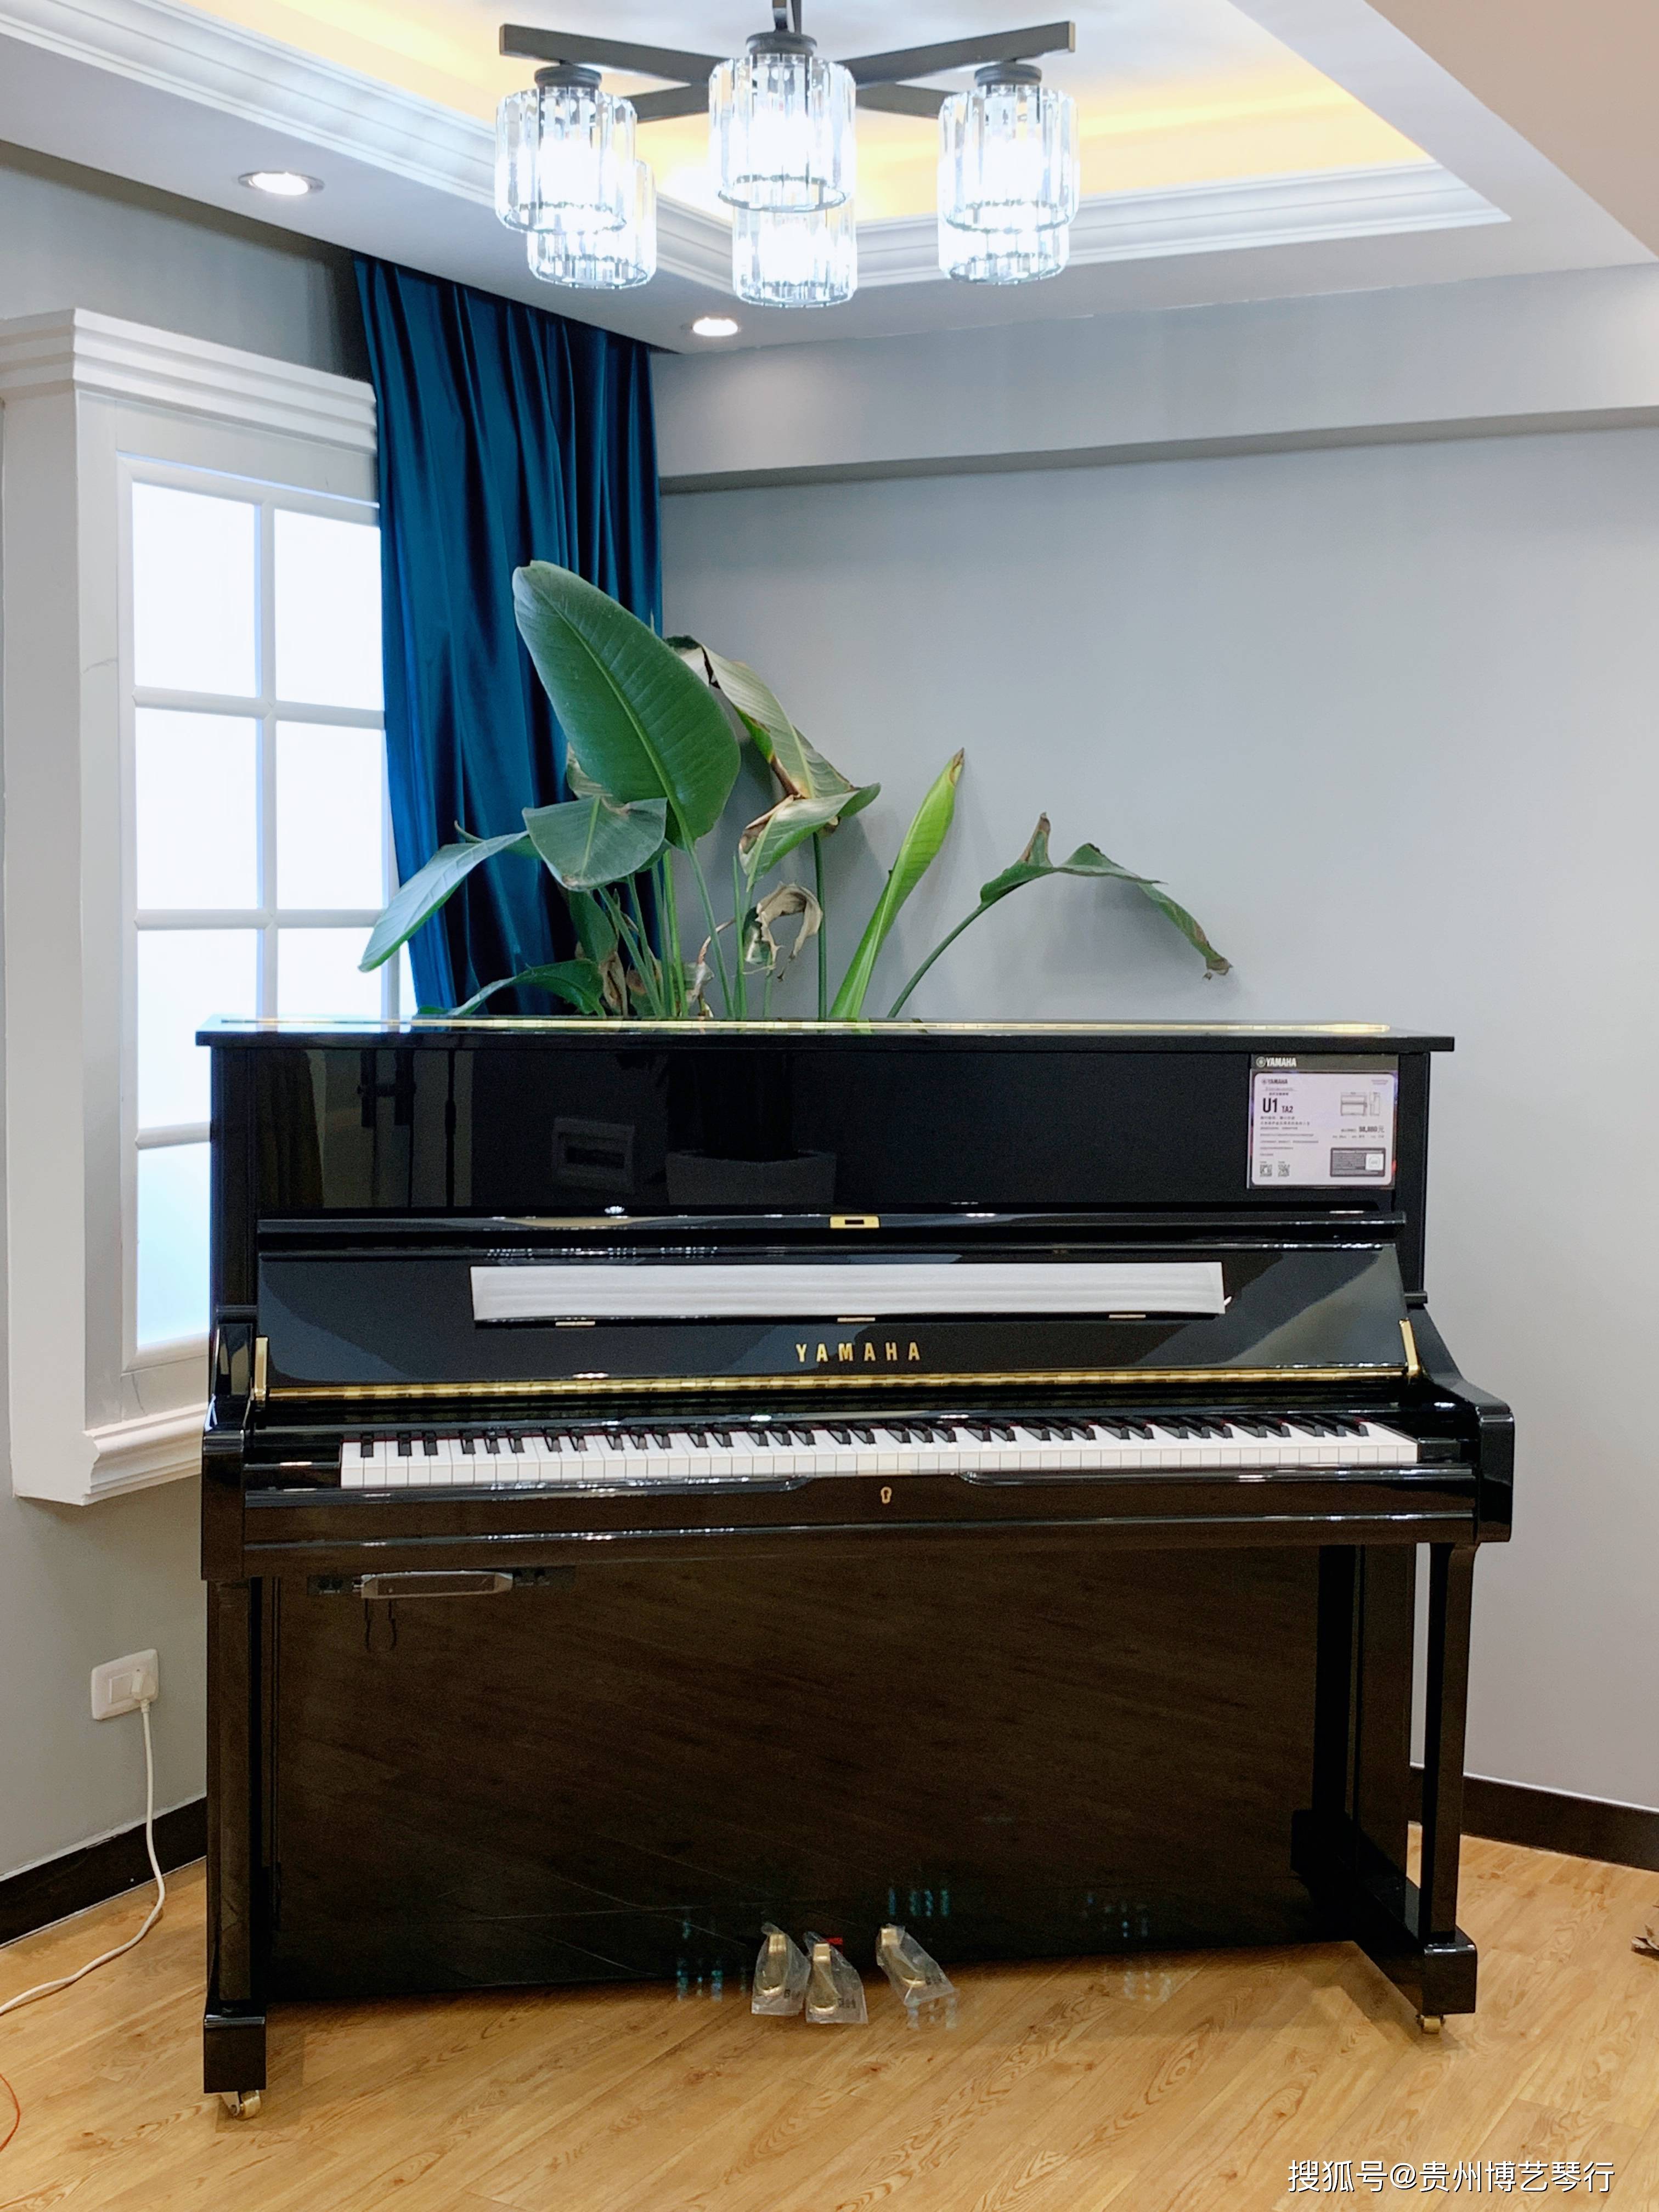 雅马哈钢琴贵阳体验中心跨界钢琴产品研修圆满落幕